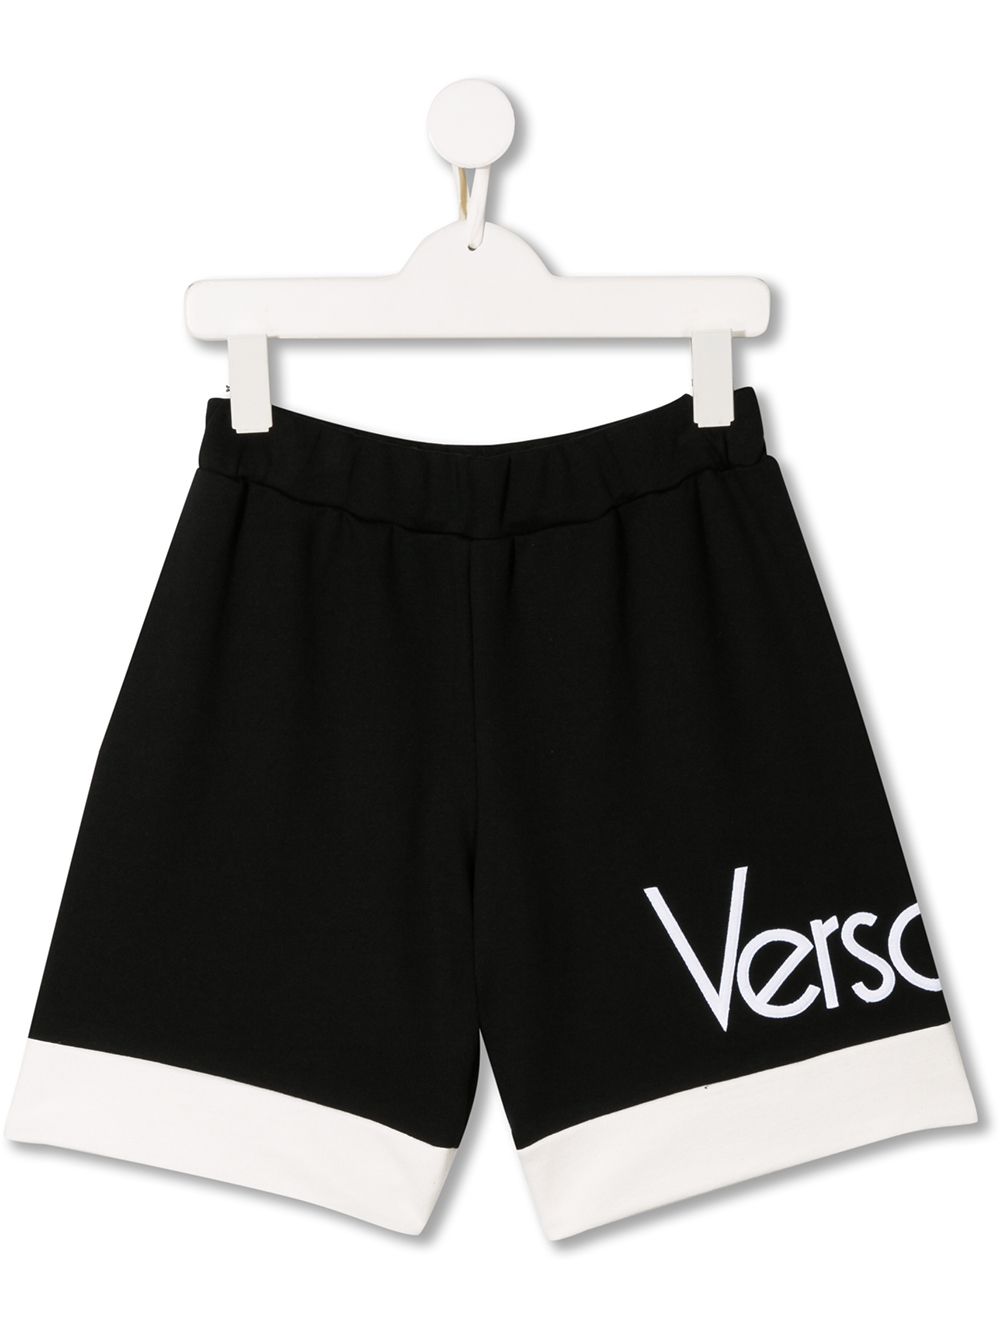 фото Young versace шорты с контрастной отделкой